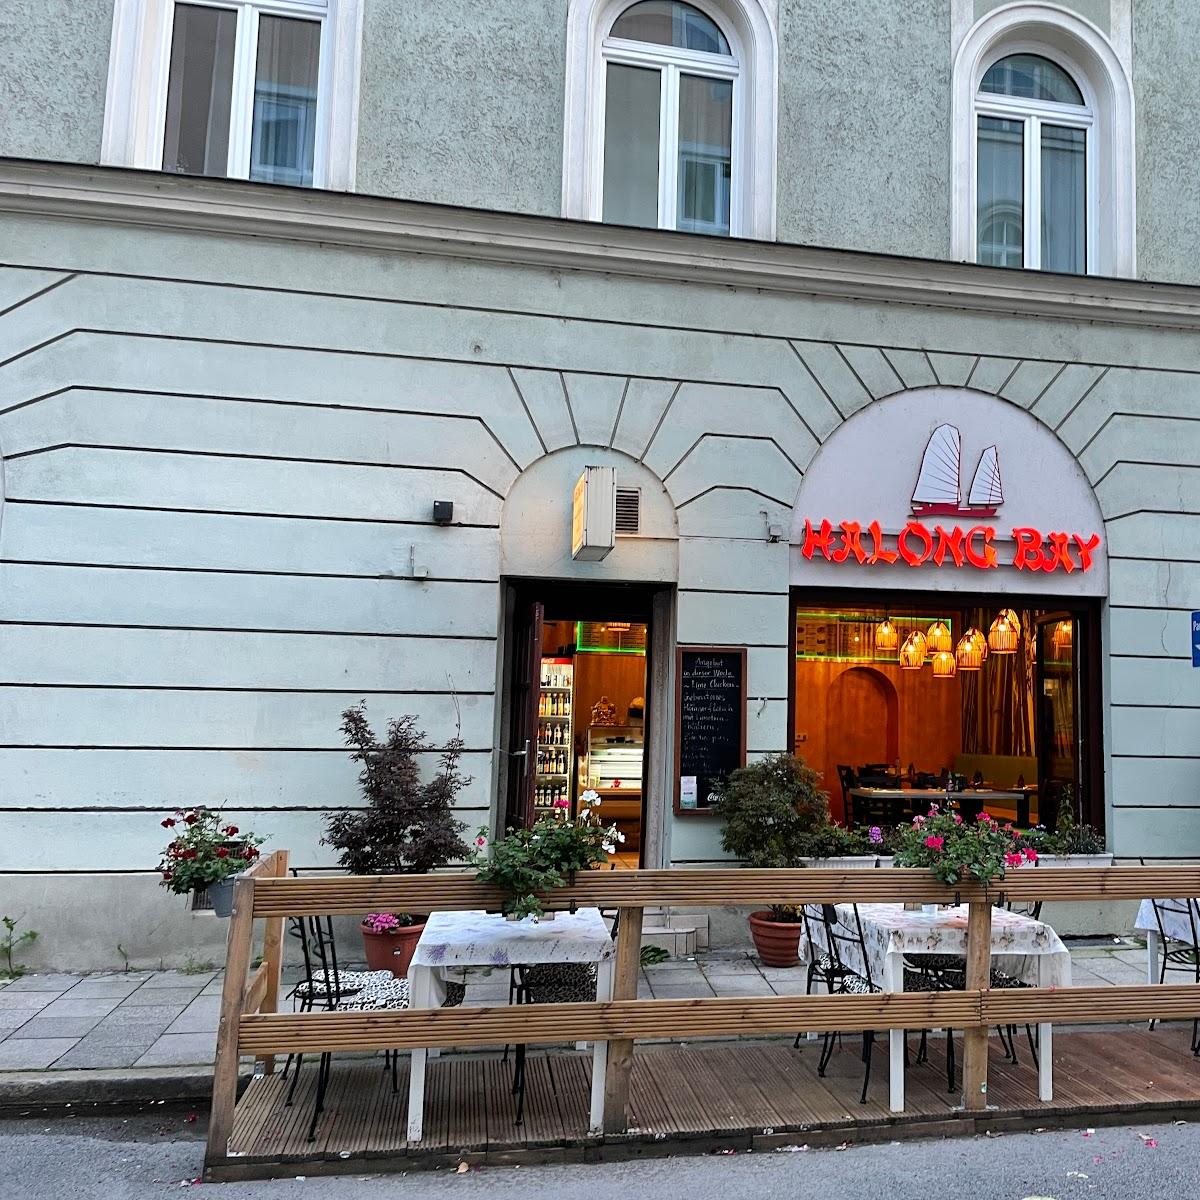 Restaurant "Halong Bay" in München